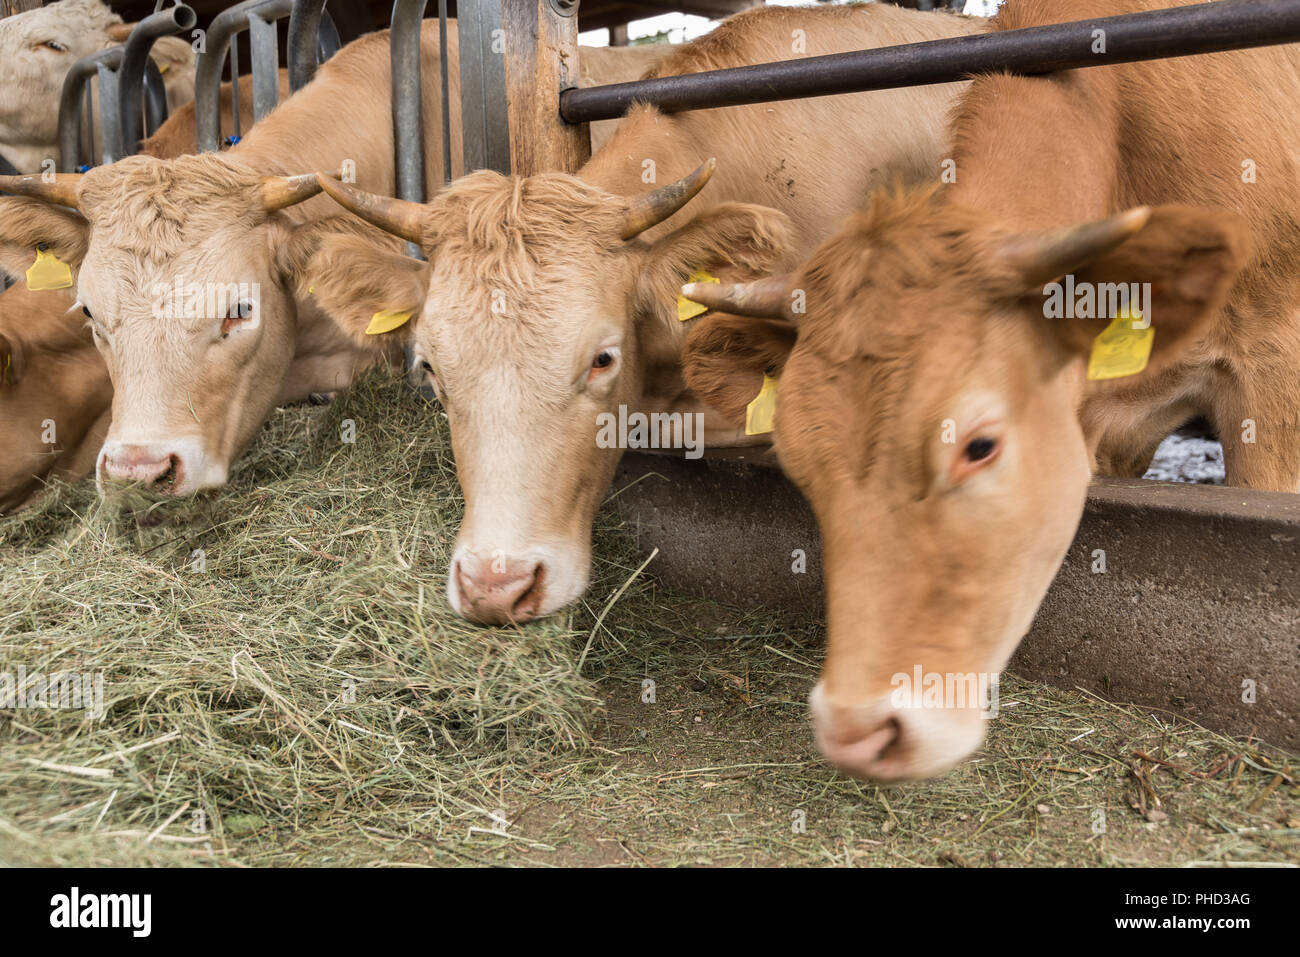 Las vacas comen heno en el establo - Cierre de mantenimiento de ganado Foto de stock